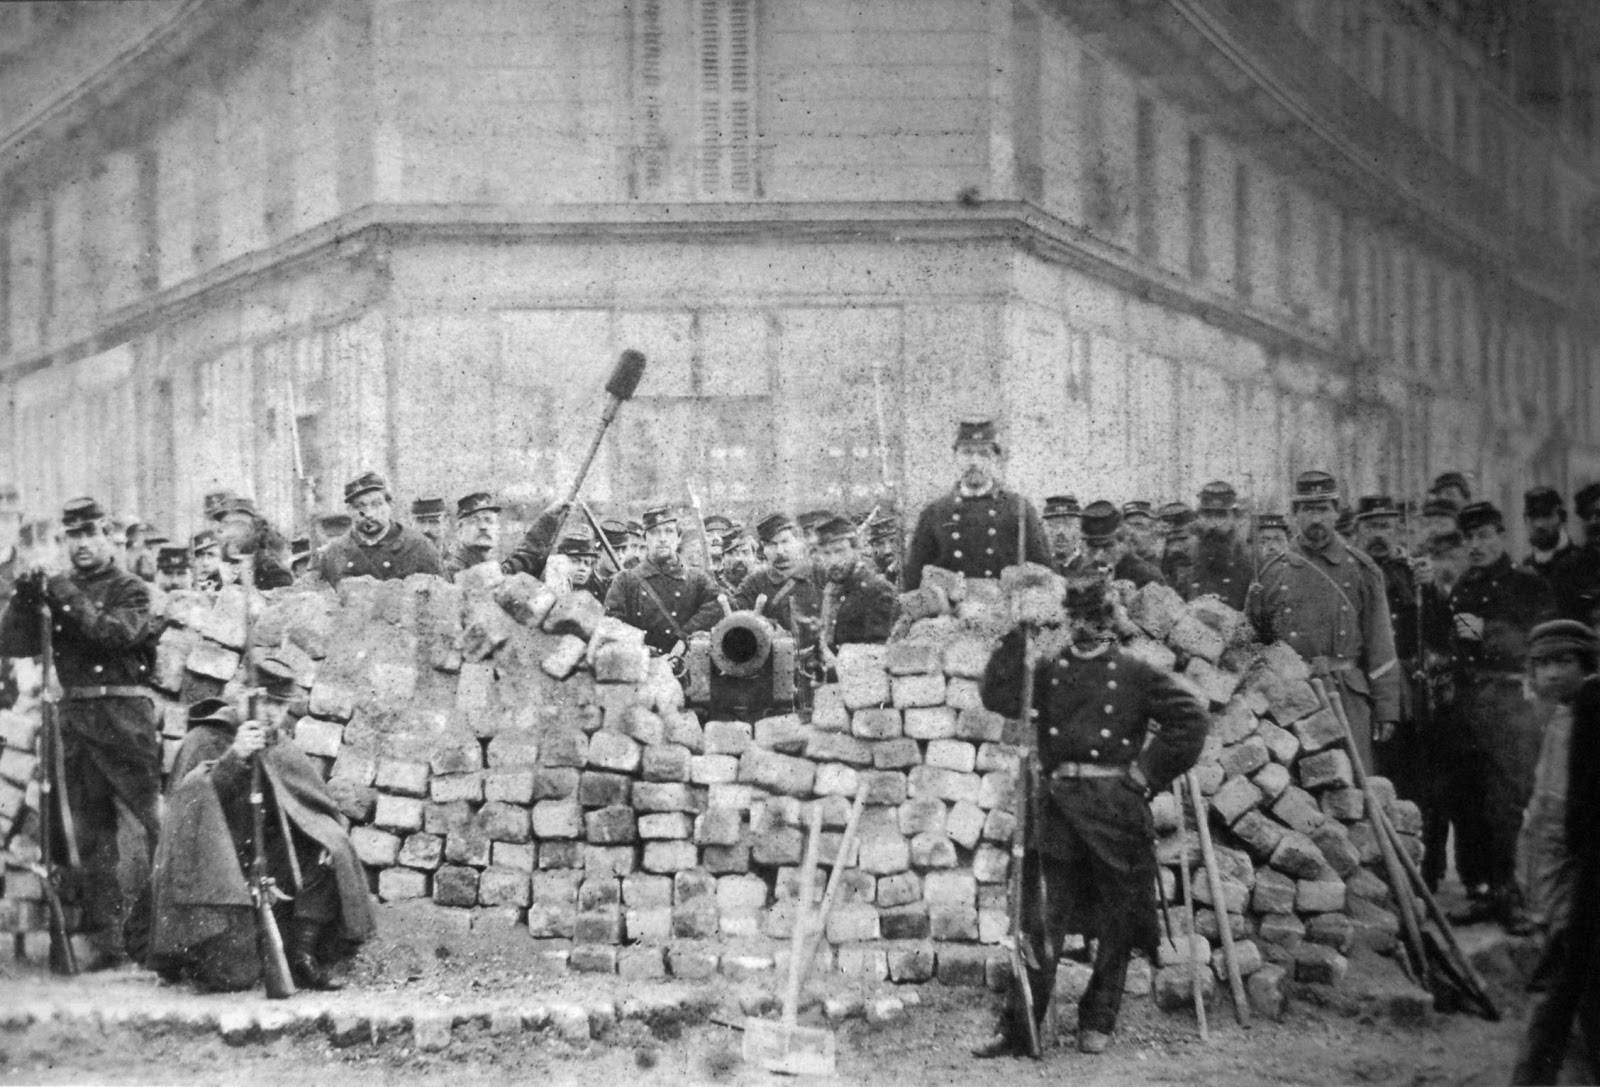 Foto de uma barricada em uma das ruas de Paris durante a Comuna que ocorreu em 1871 e contou com grande participação do movimento anarquista.